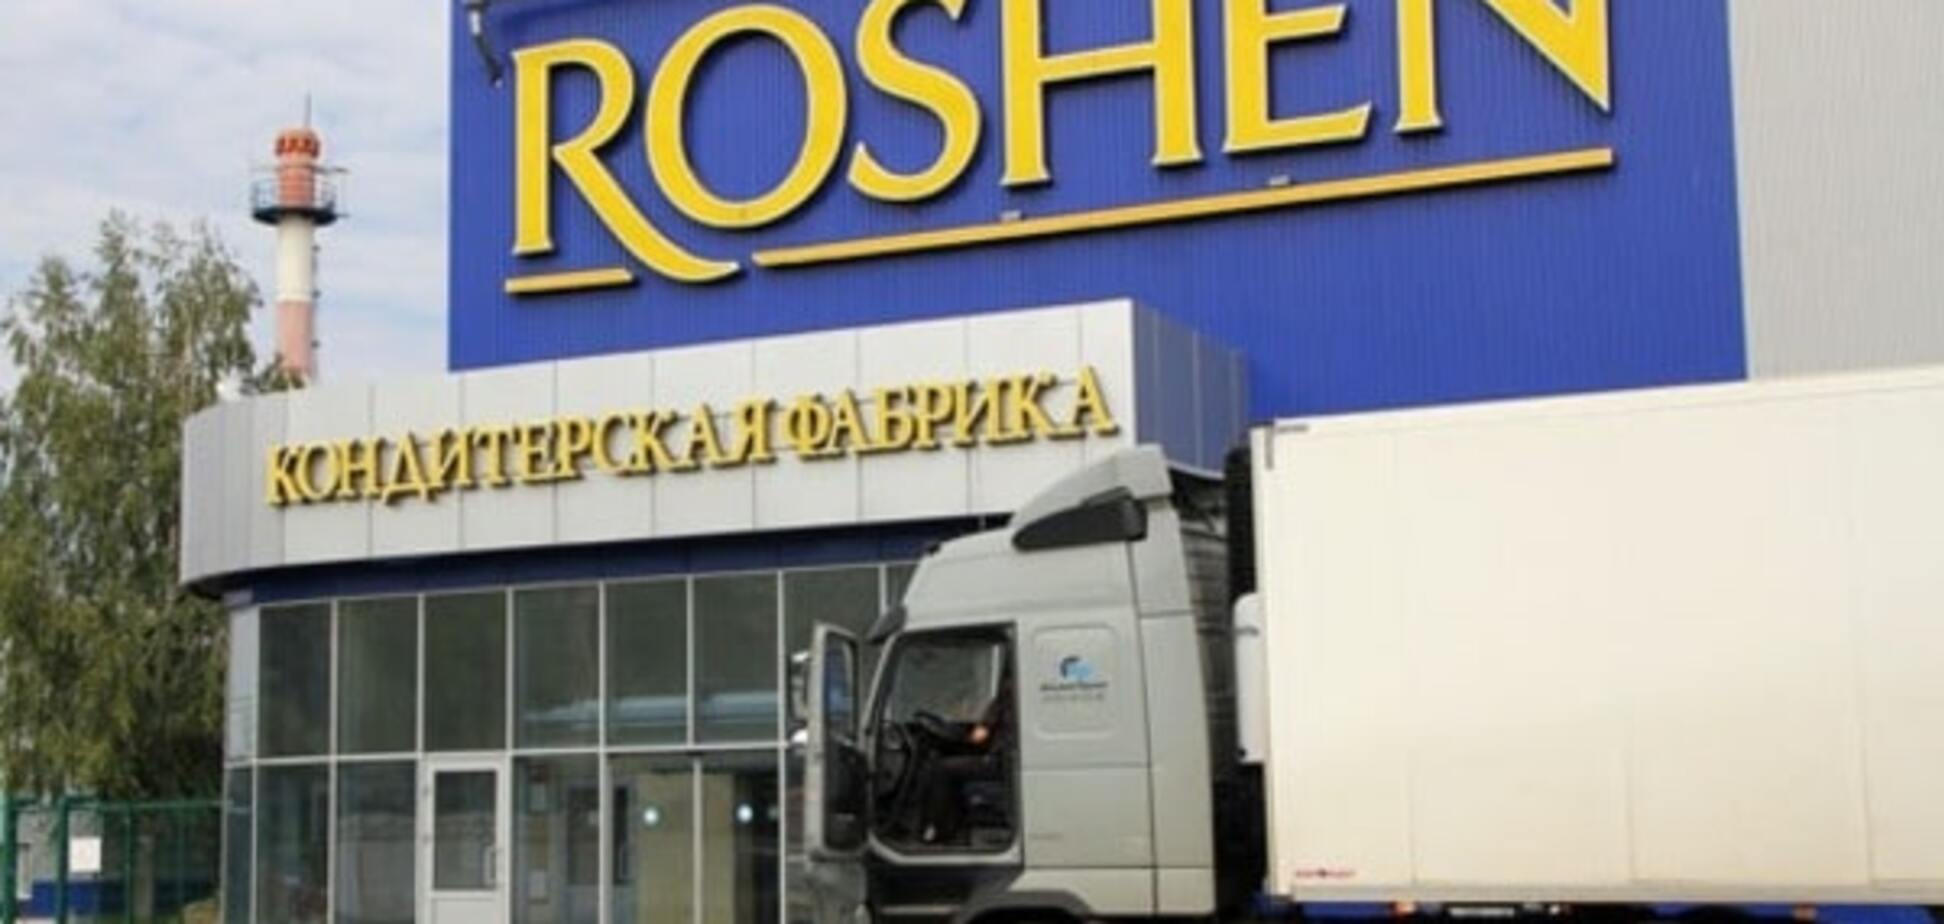 'Закрыть и развалить': жители Липецка рассказали об отношении к фабрике Roshen